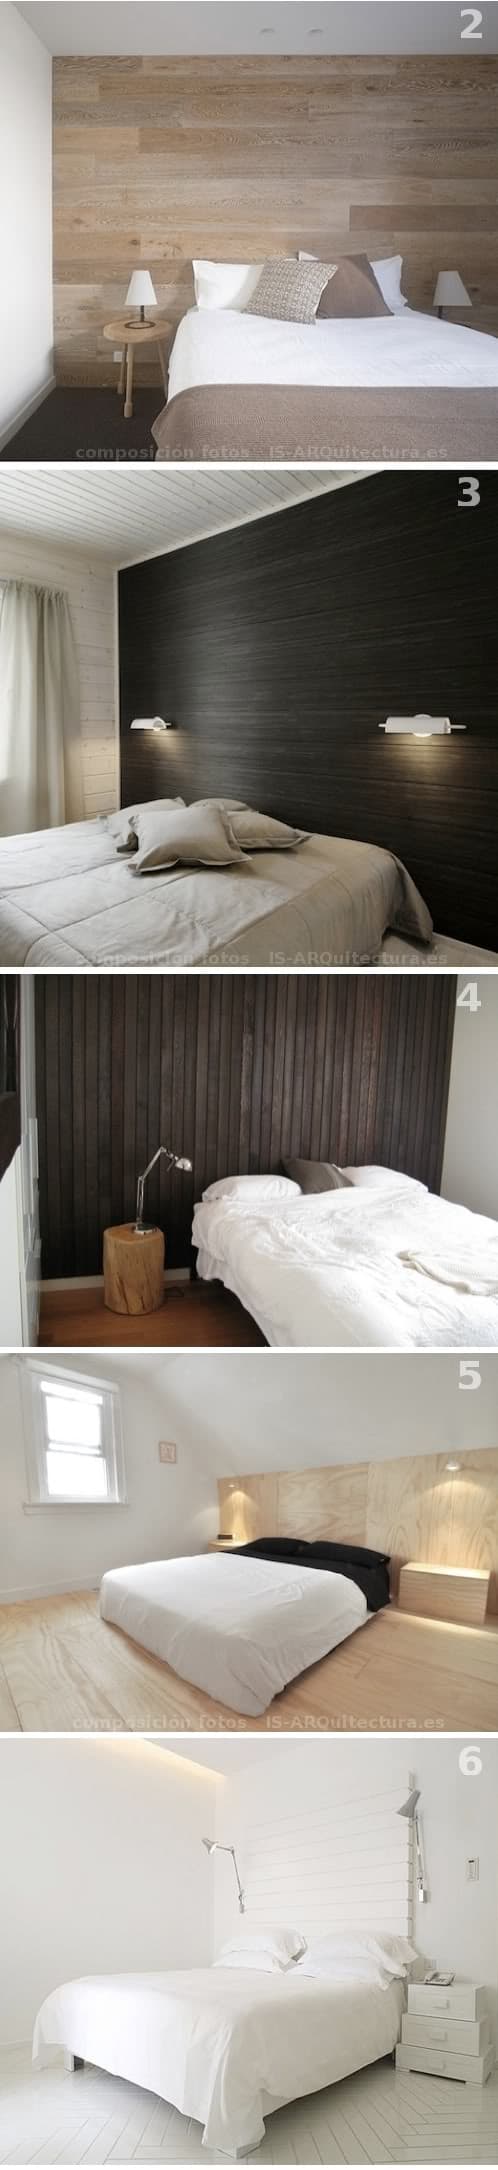 ejemplos paredes cabeceras de cama